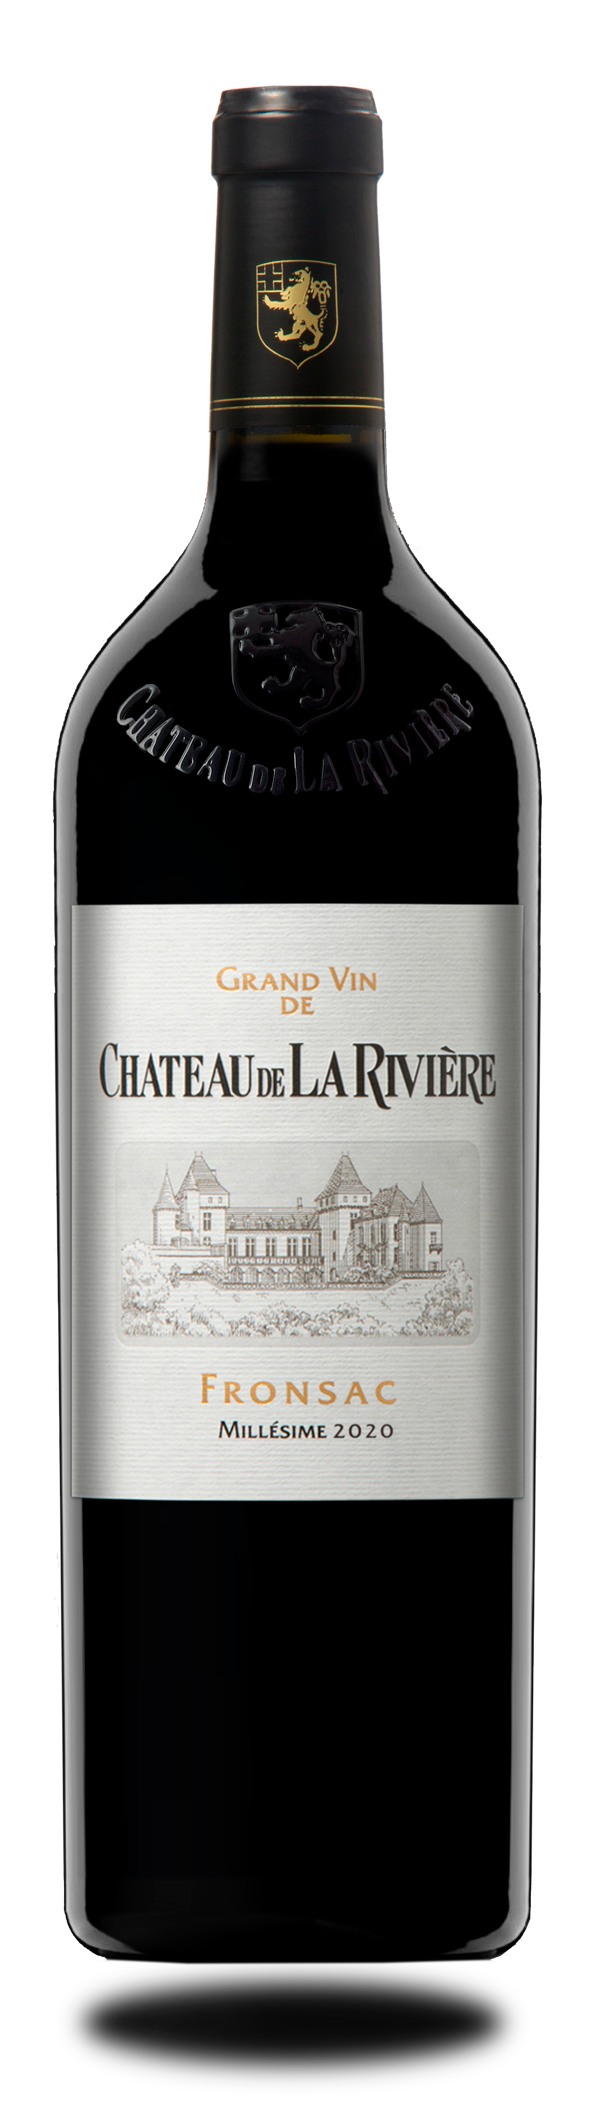 Château de La Rivière 2020 - Fronsac - Grand Vin de Bordeaux